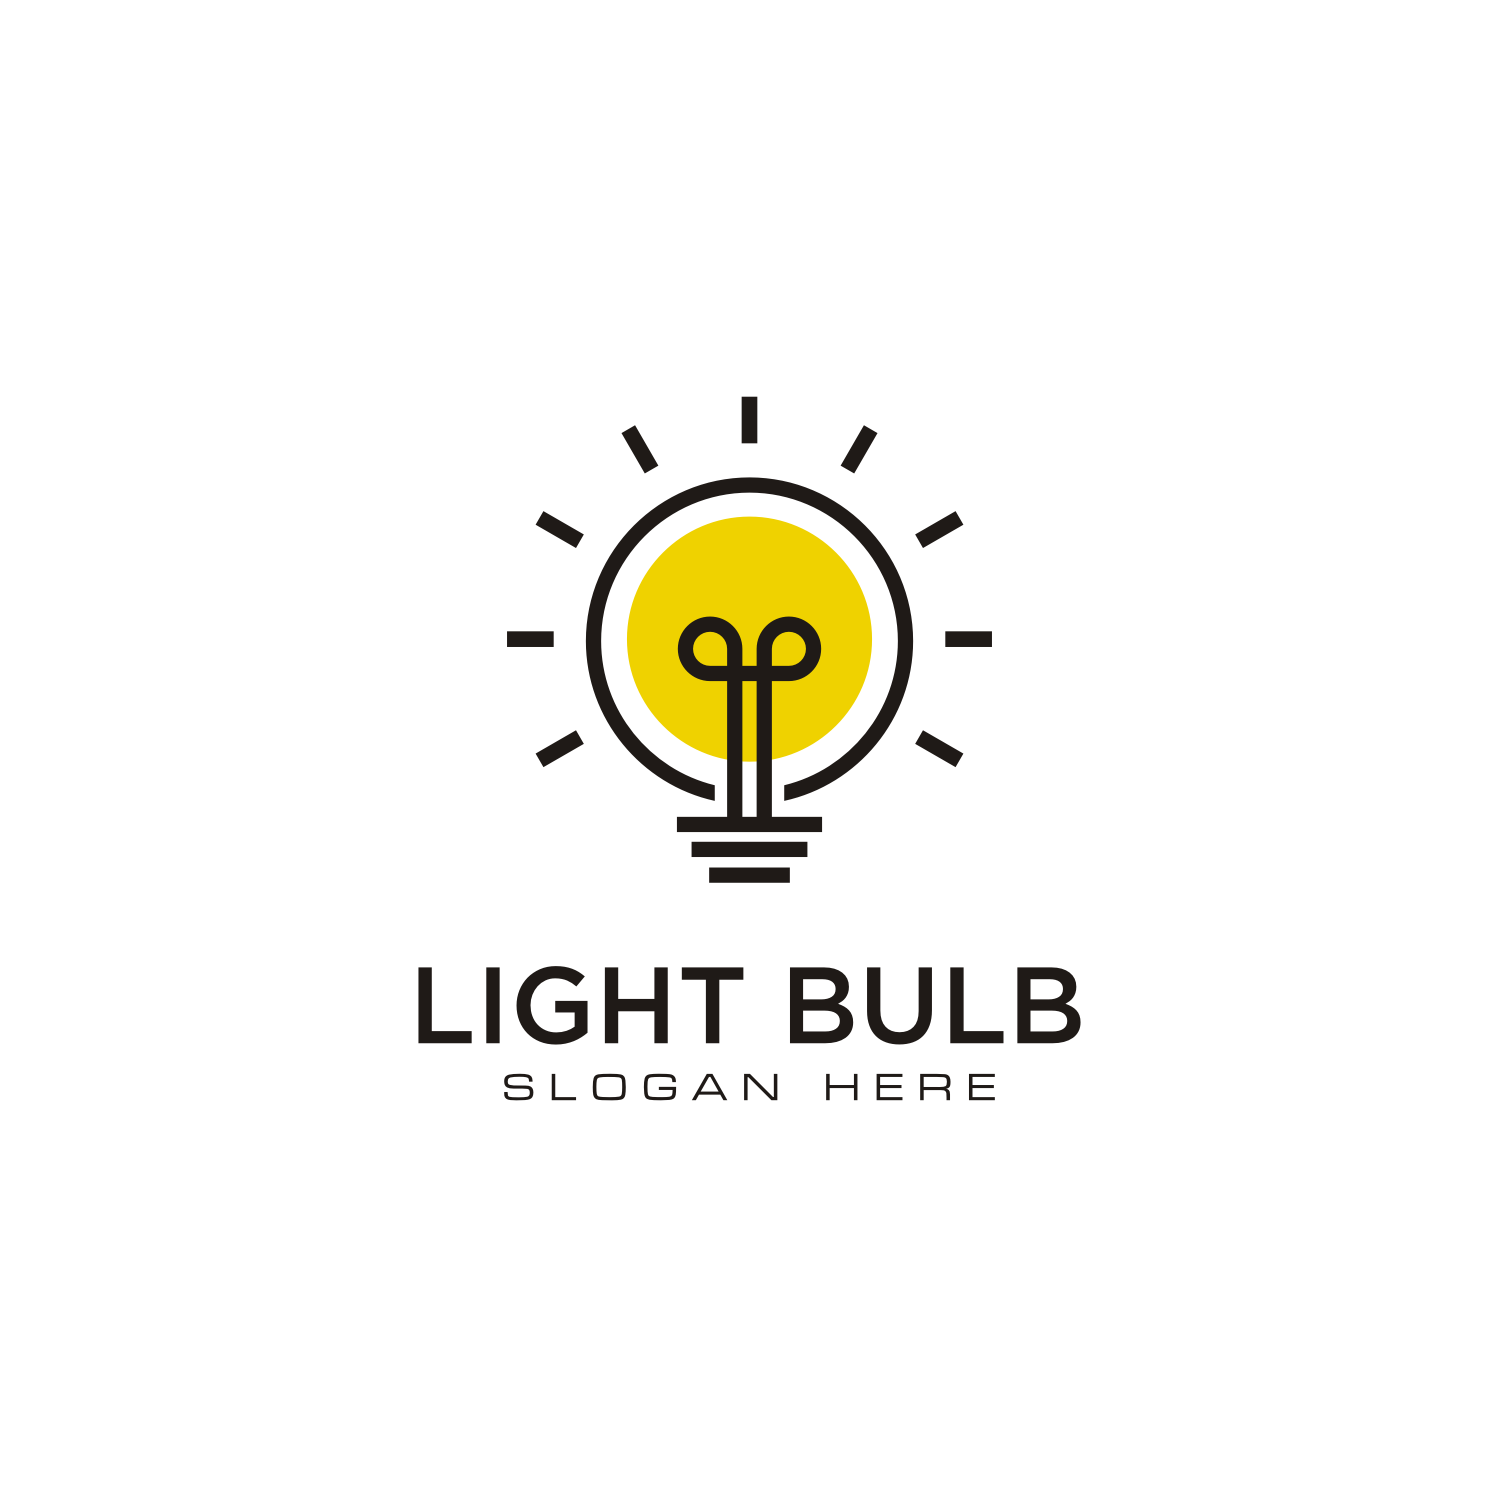 Free Light Bulb Logo Designs - DIY Light Bulb Logo Maker - Designmantic.com